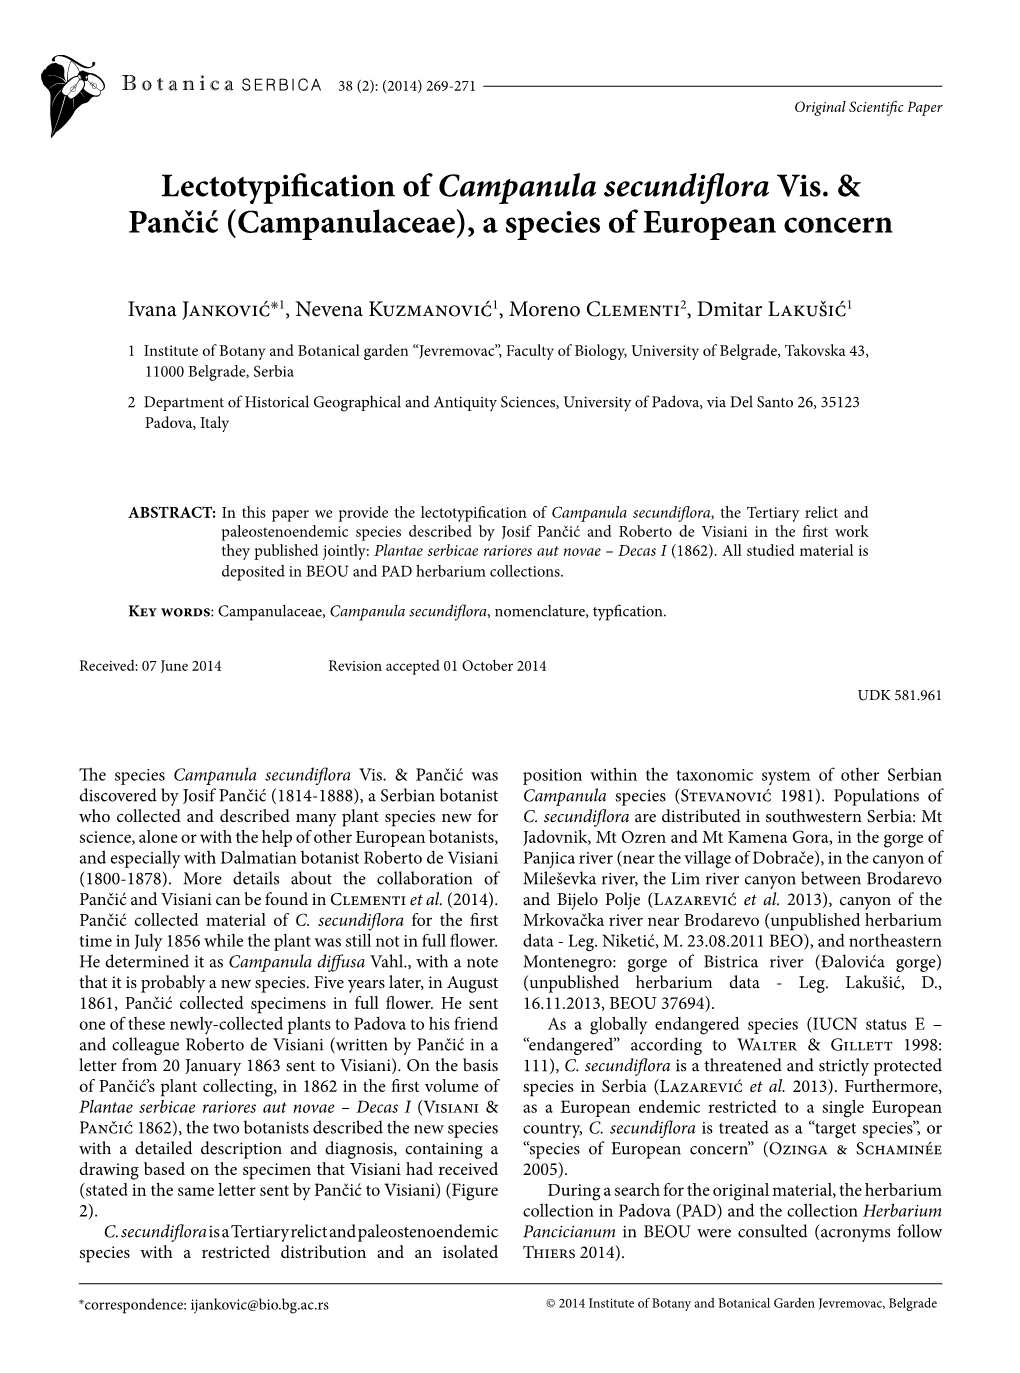 Campanulaceae), a Species of European Concern